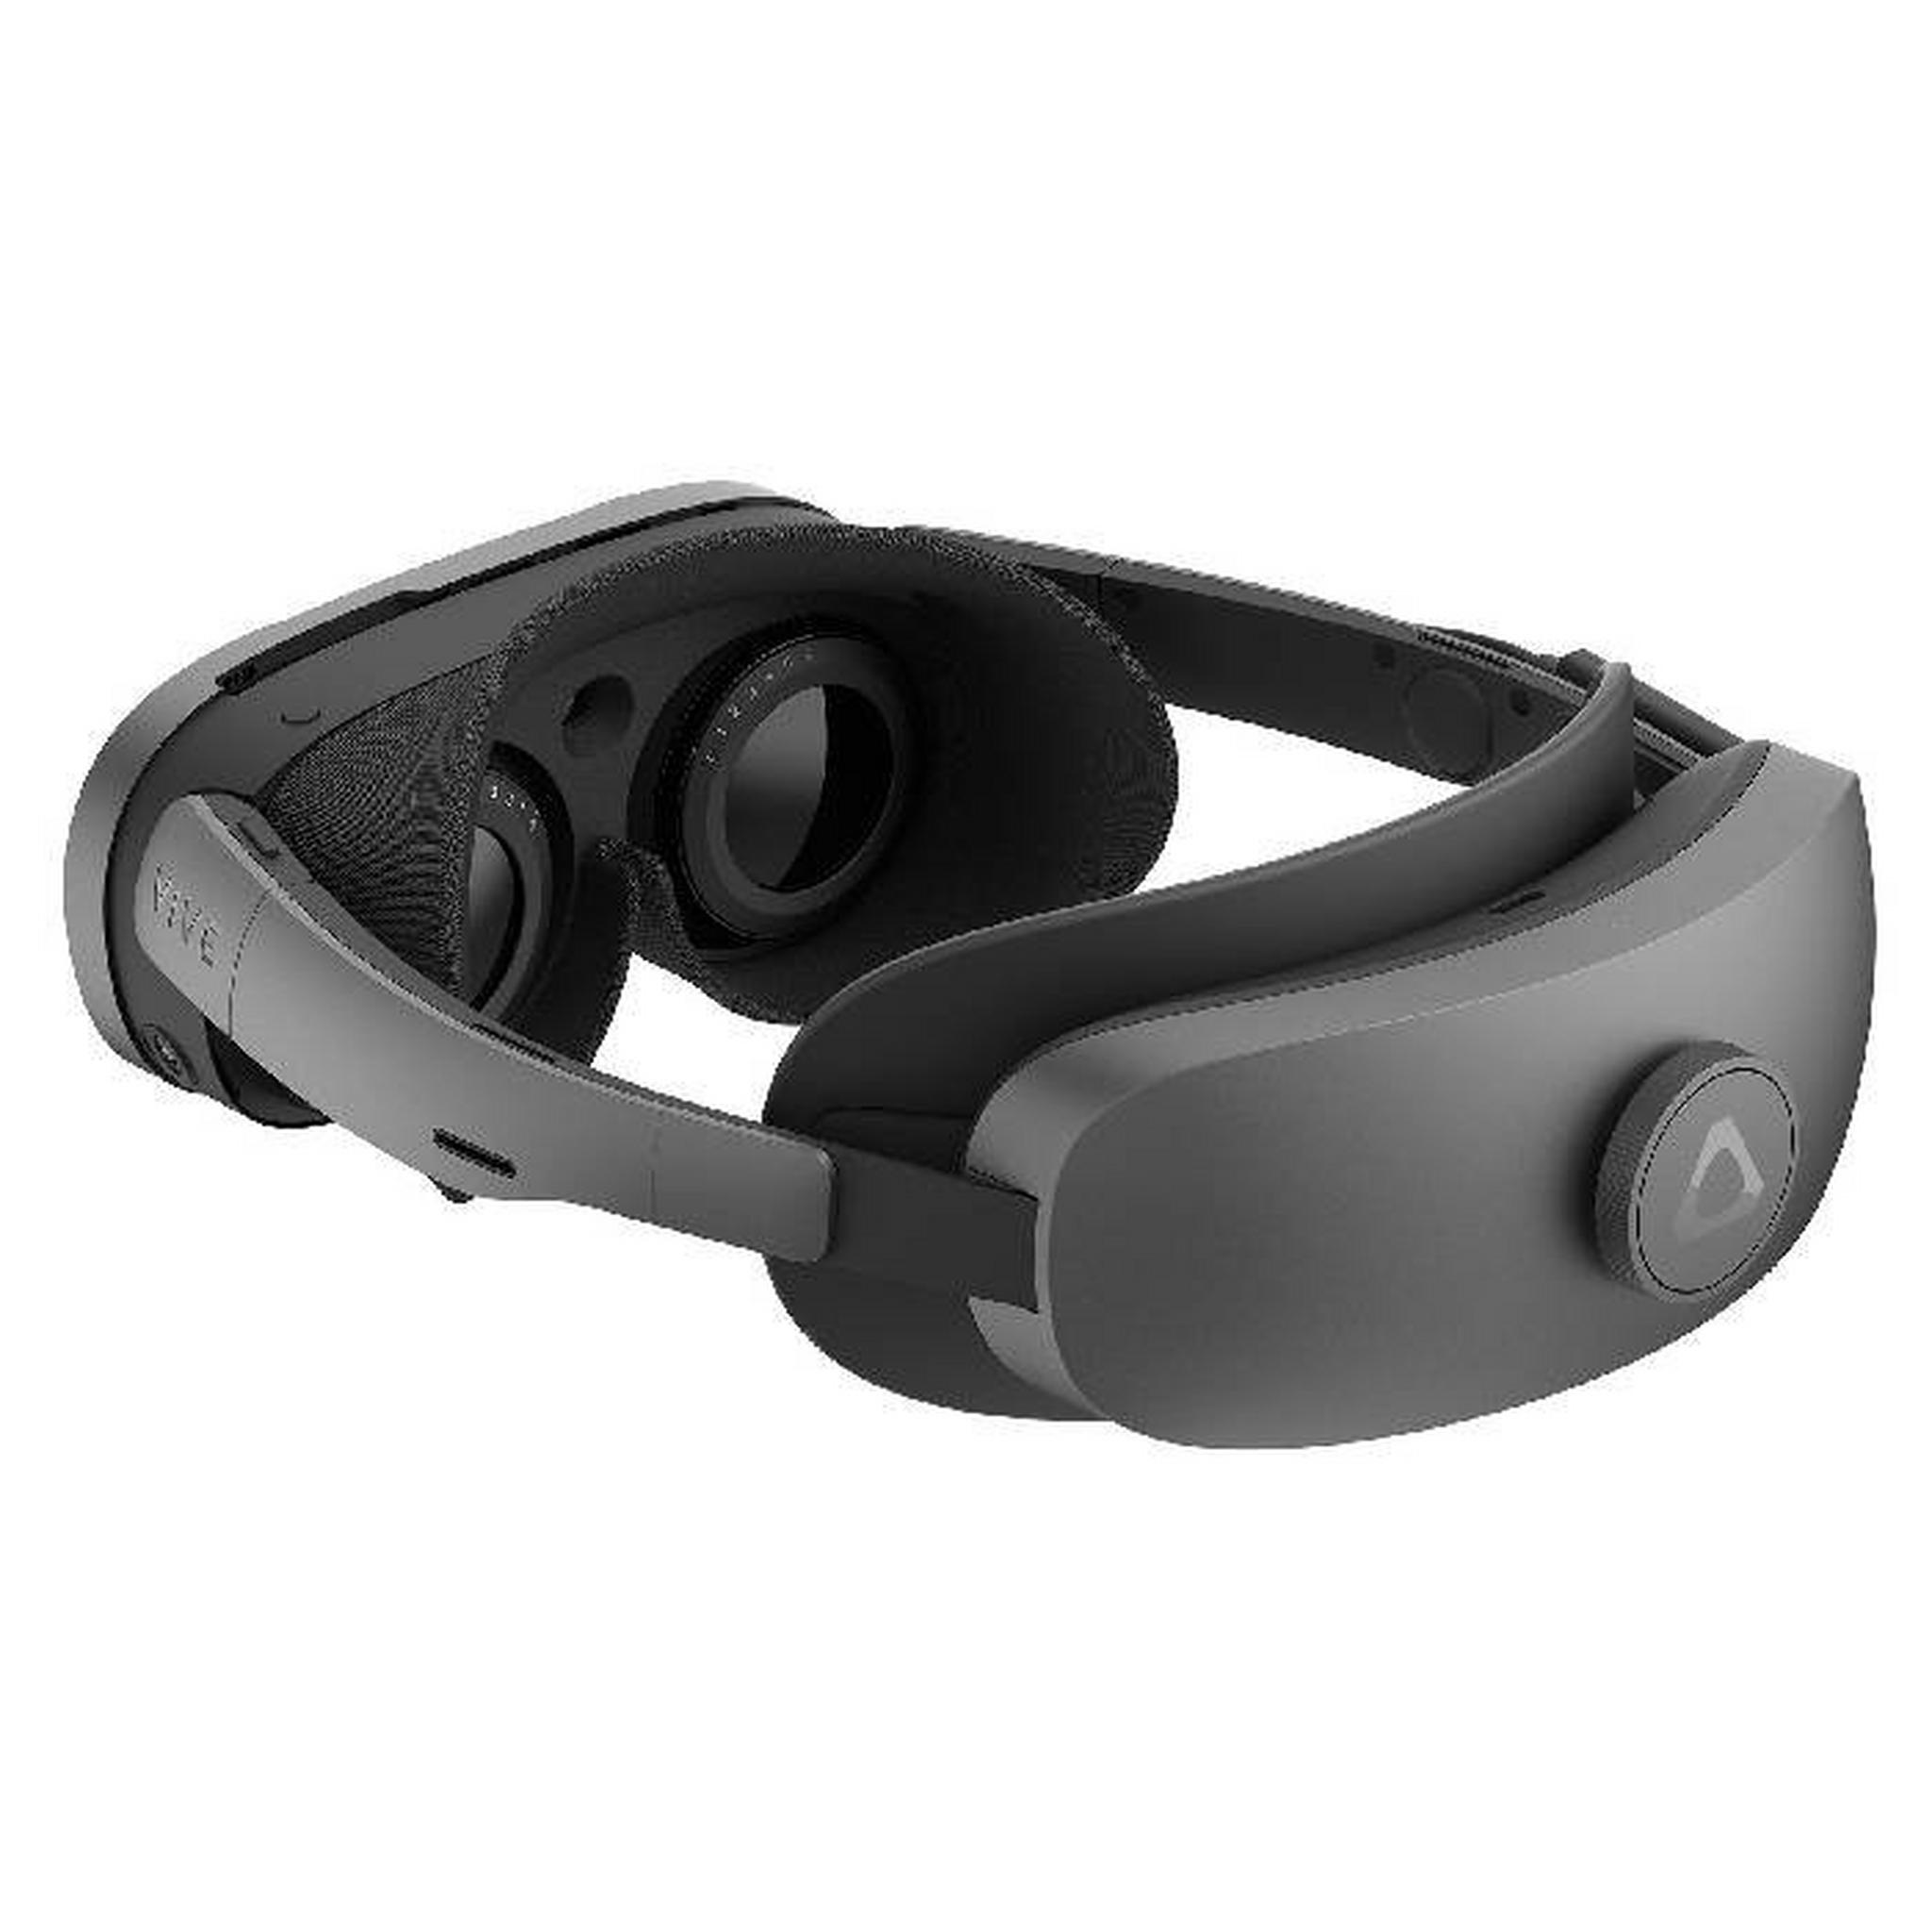 نظارة الواقع الافتراضي فايف اكس آر ايليت من اتش تي سي، 99HATS003-00 - أسود